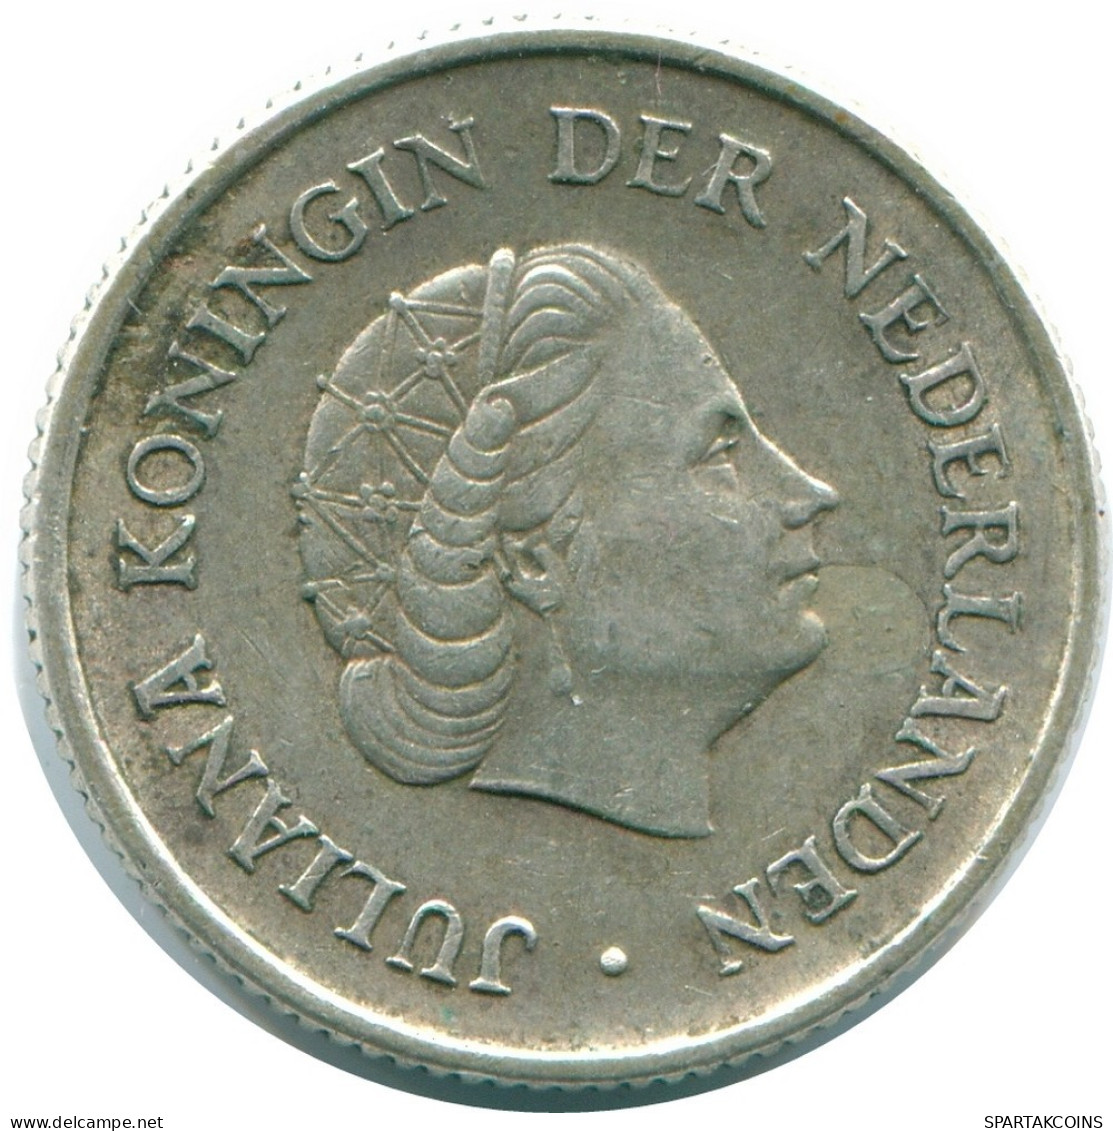 1/4 GULDEN 1965 NIEDERLÄNDISCHE ANTILLEN SILBER Koloniale Münze #NL11430.4.D.A - Antilles Néerlandaises